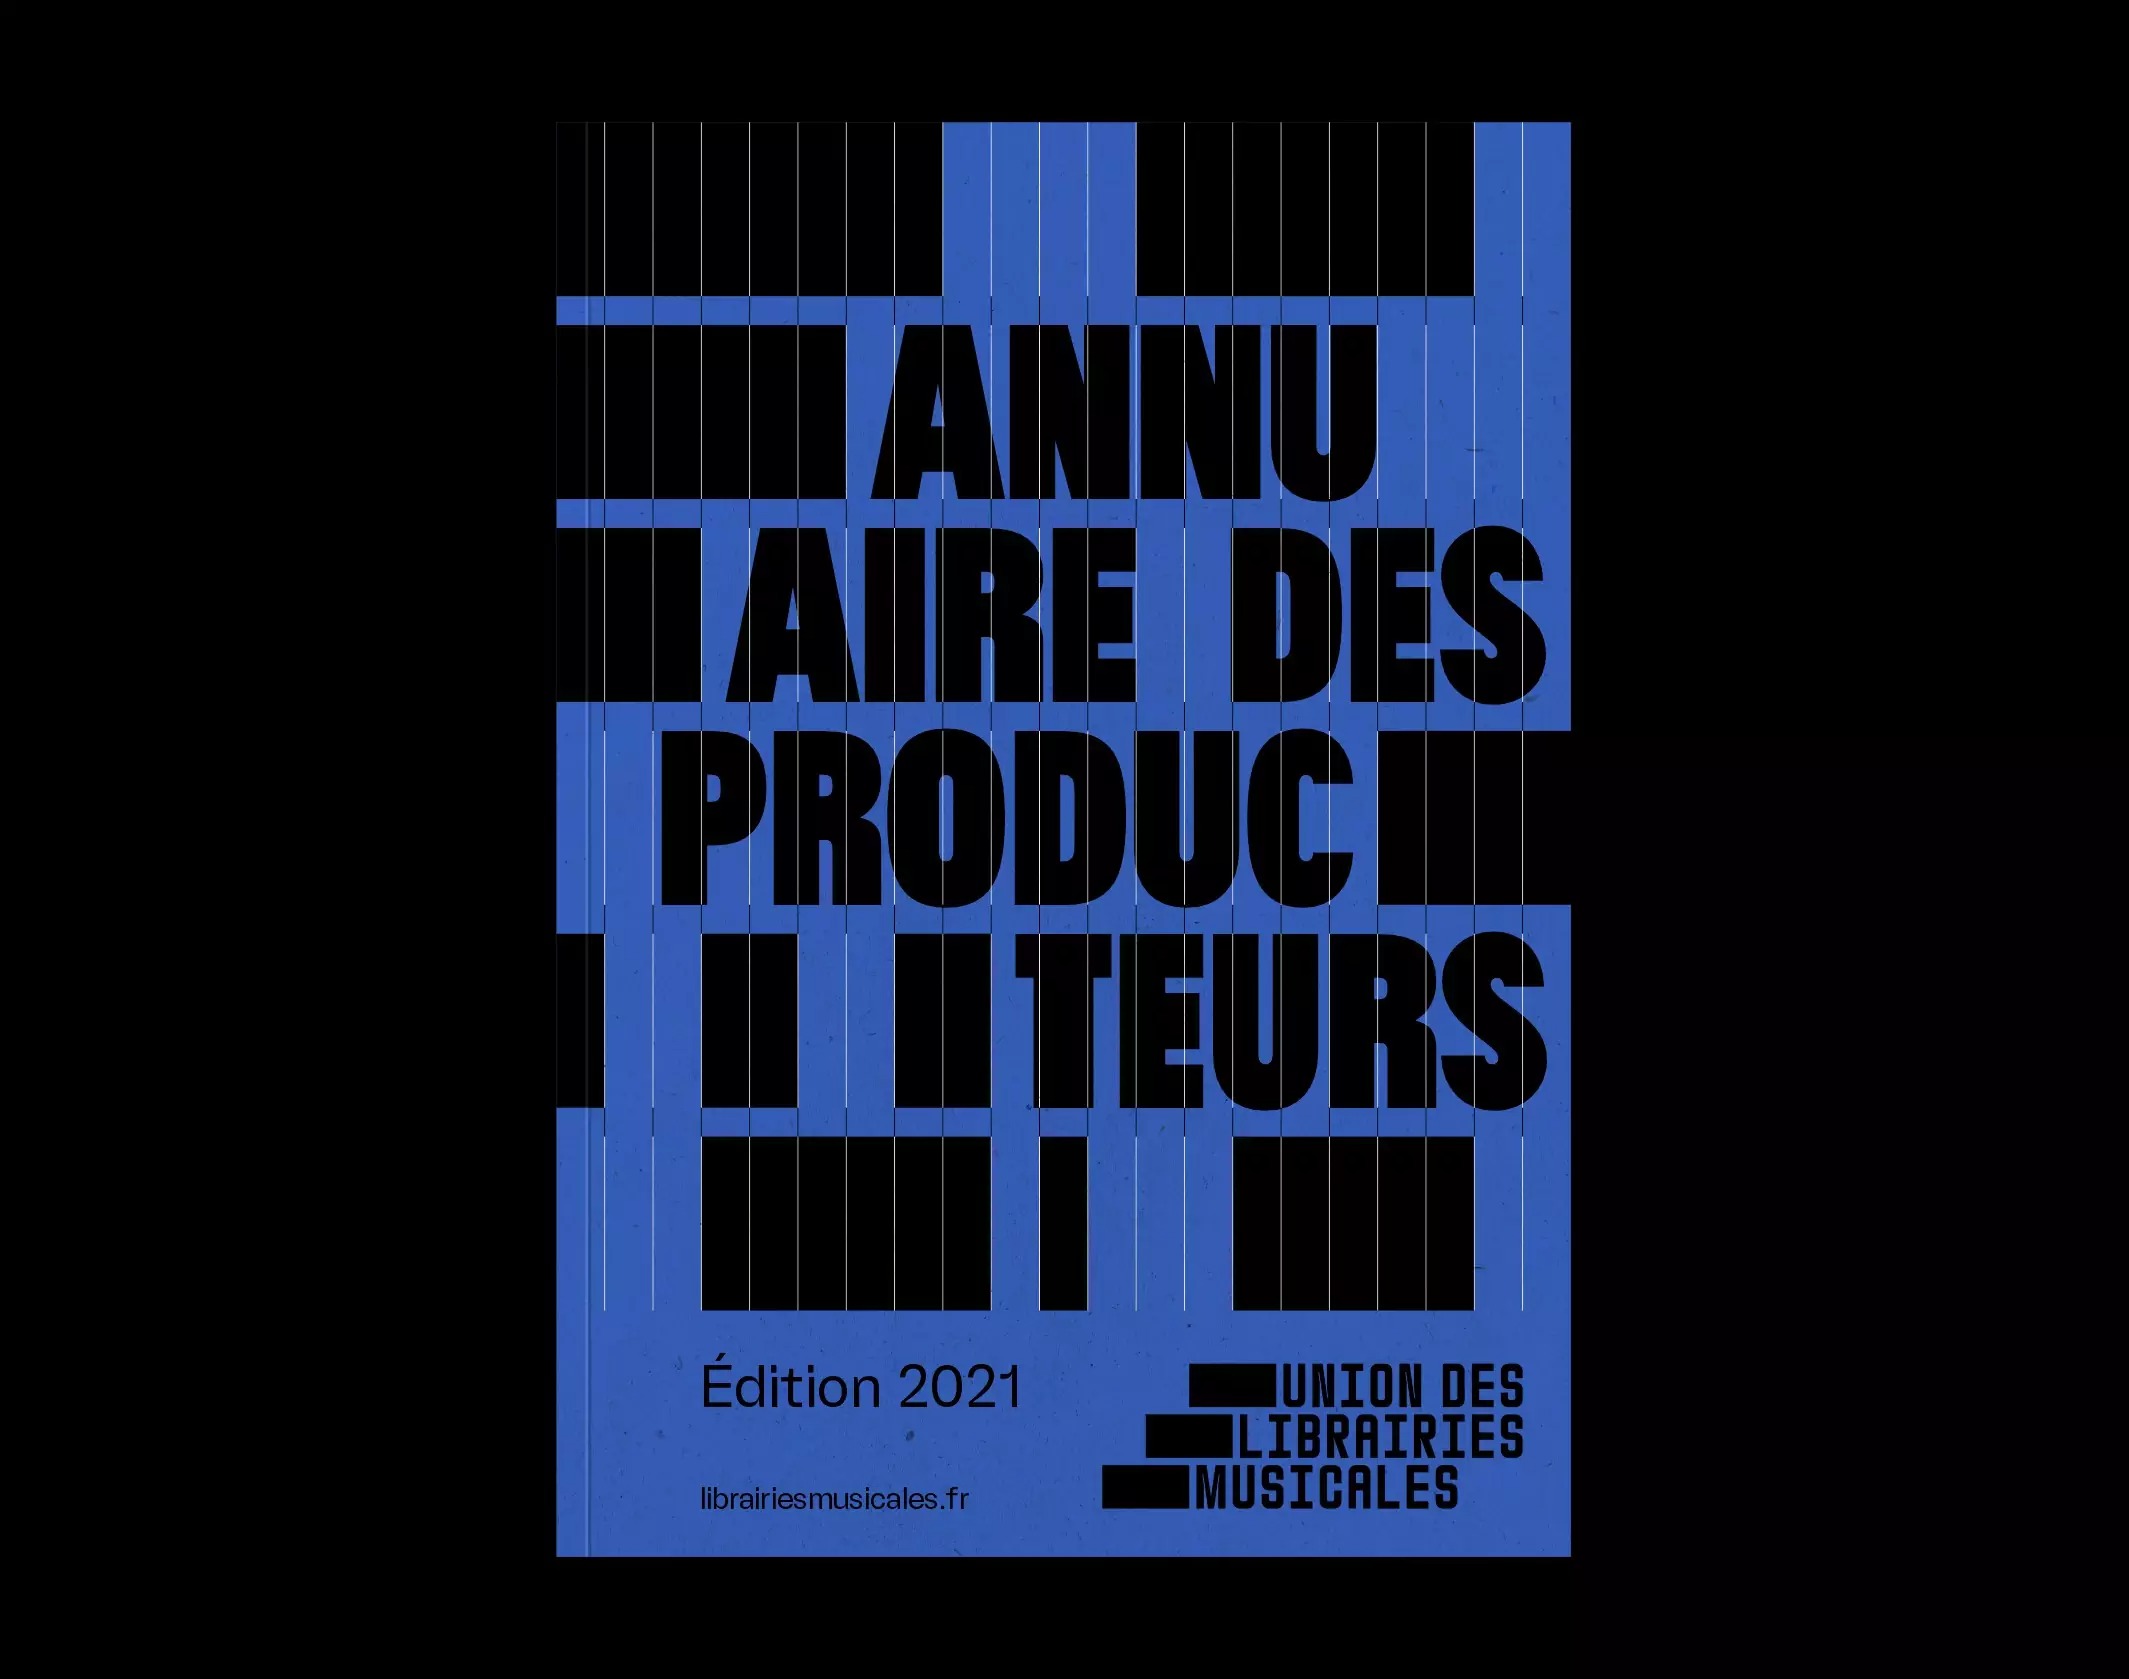 Union des Librairies Musicales音乐组织联盟视觉形象设计